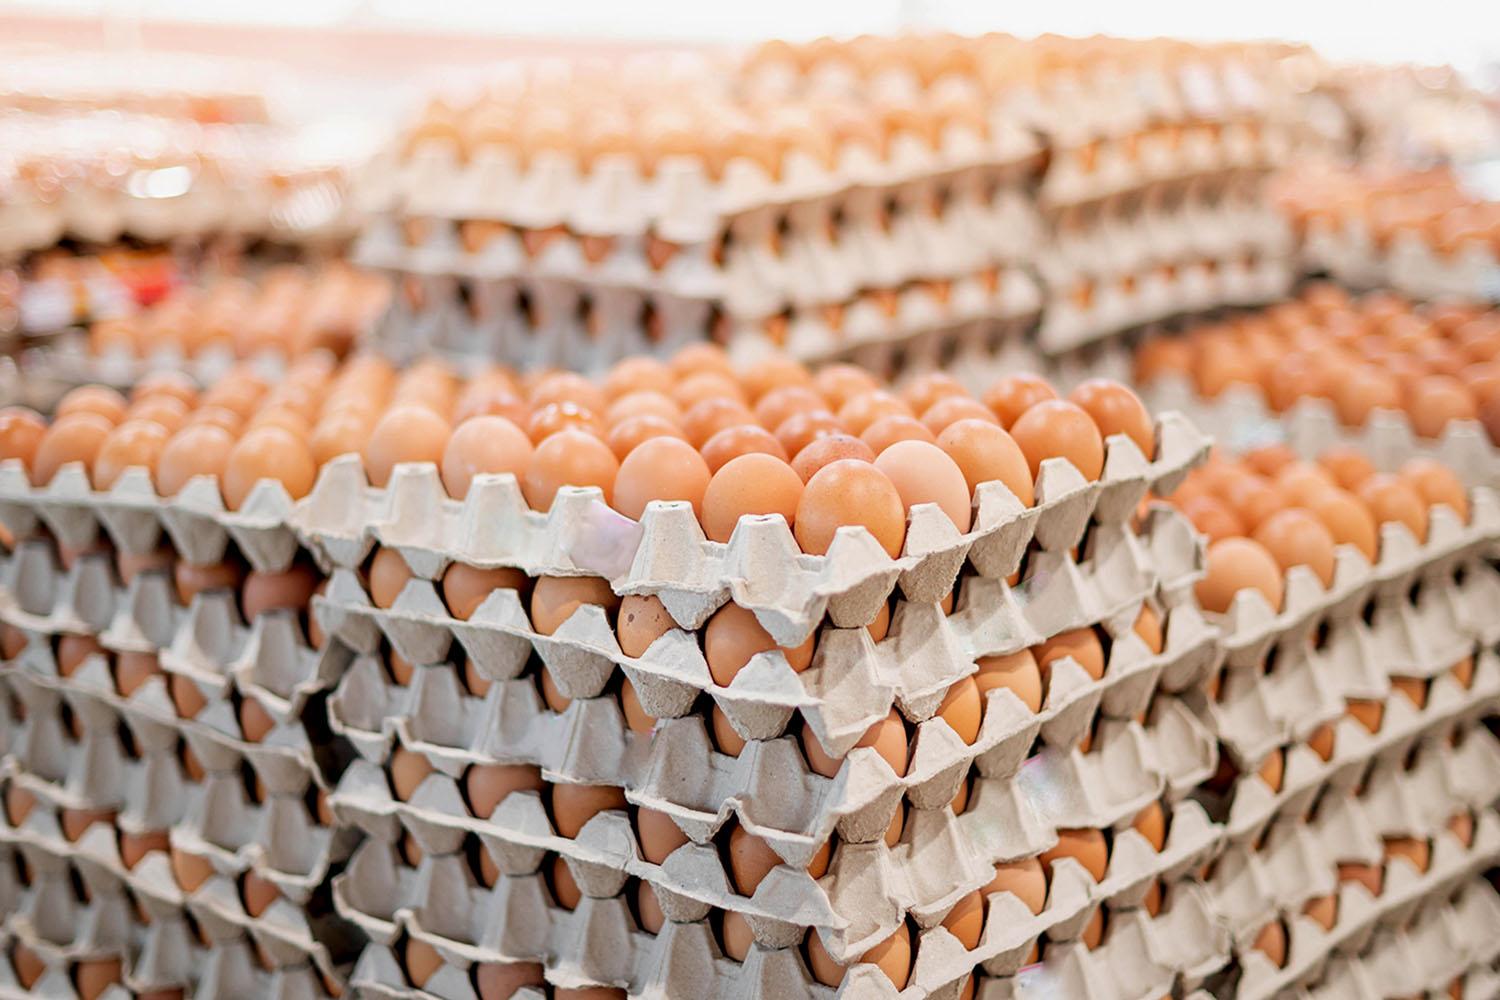 chicken-eggs-increase-price-6-baht-per-pack-today-SPACEBAR-Hero.jpg